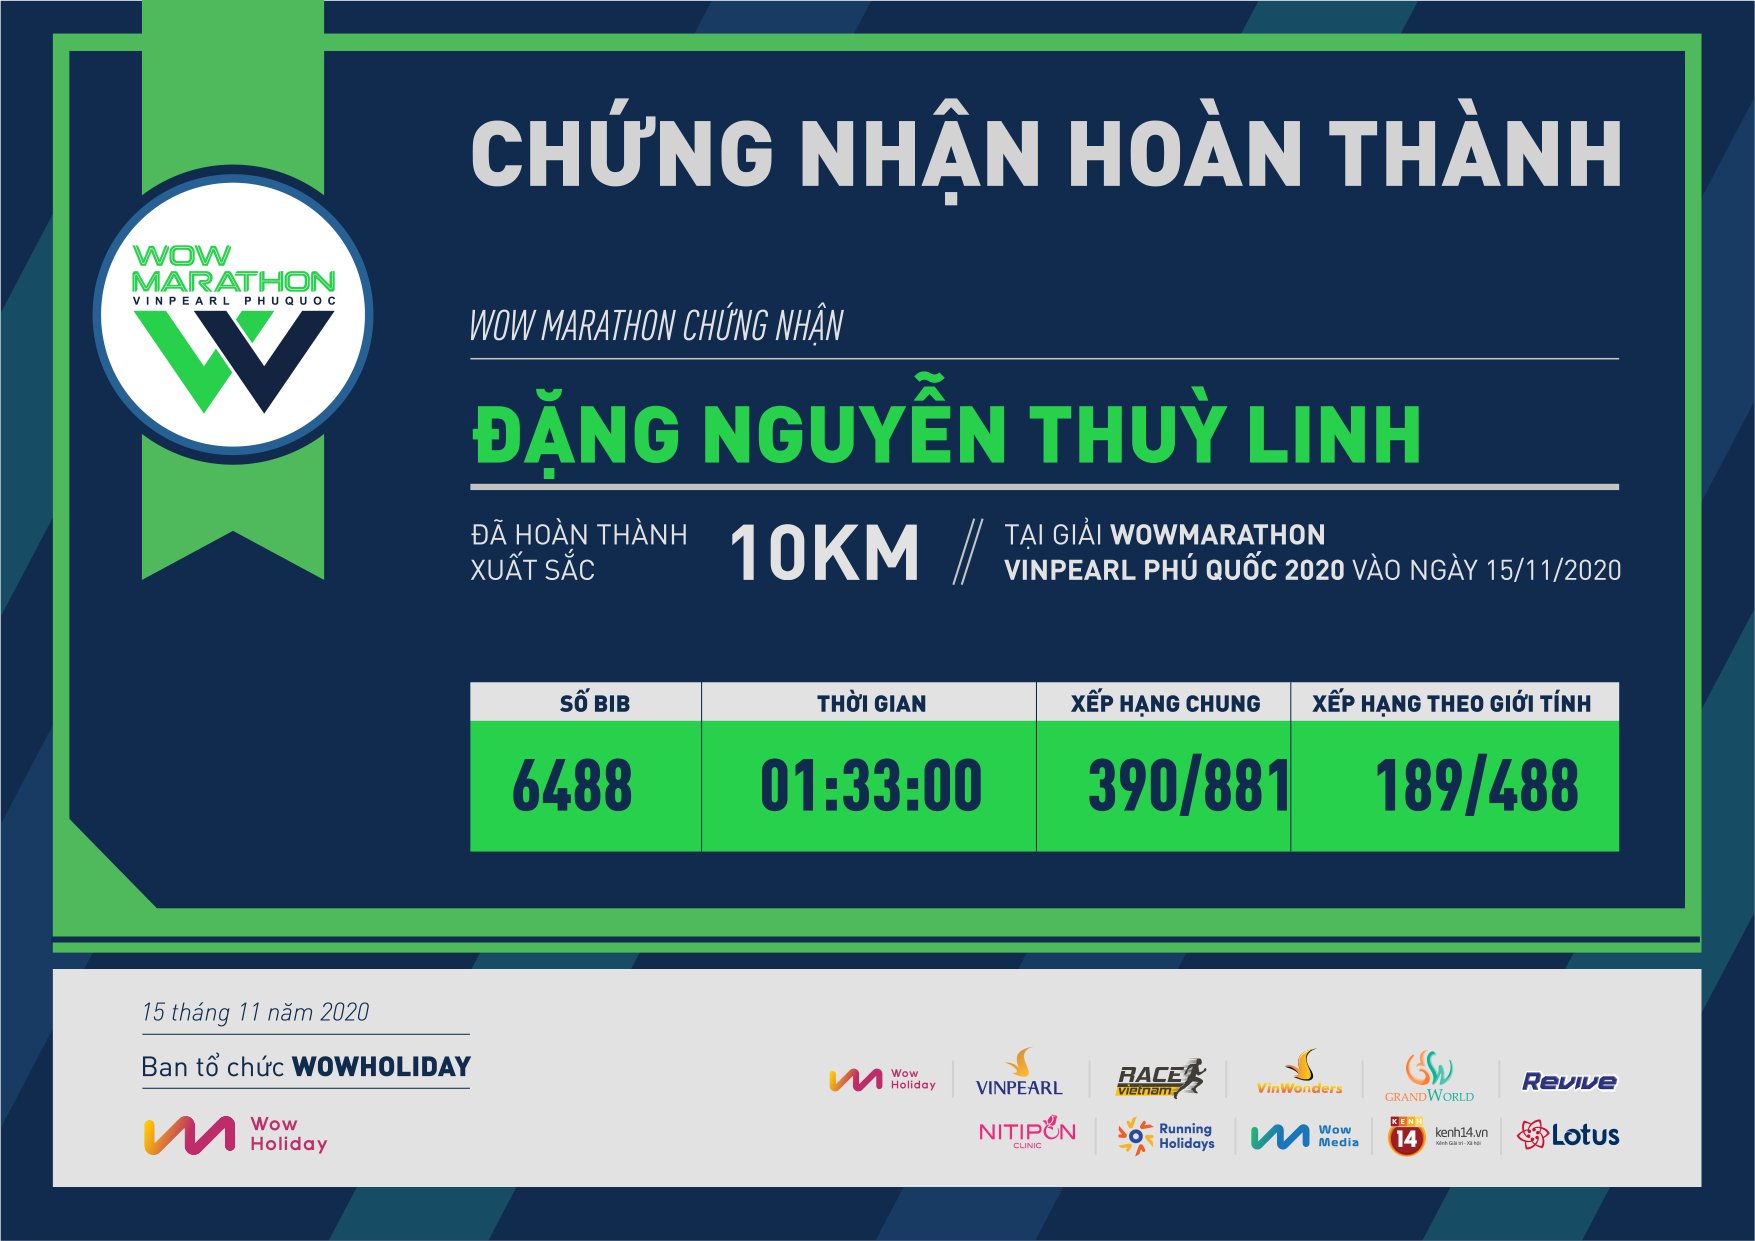 6488 - Đặng Nguyễn Thuỳ Linh